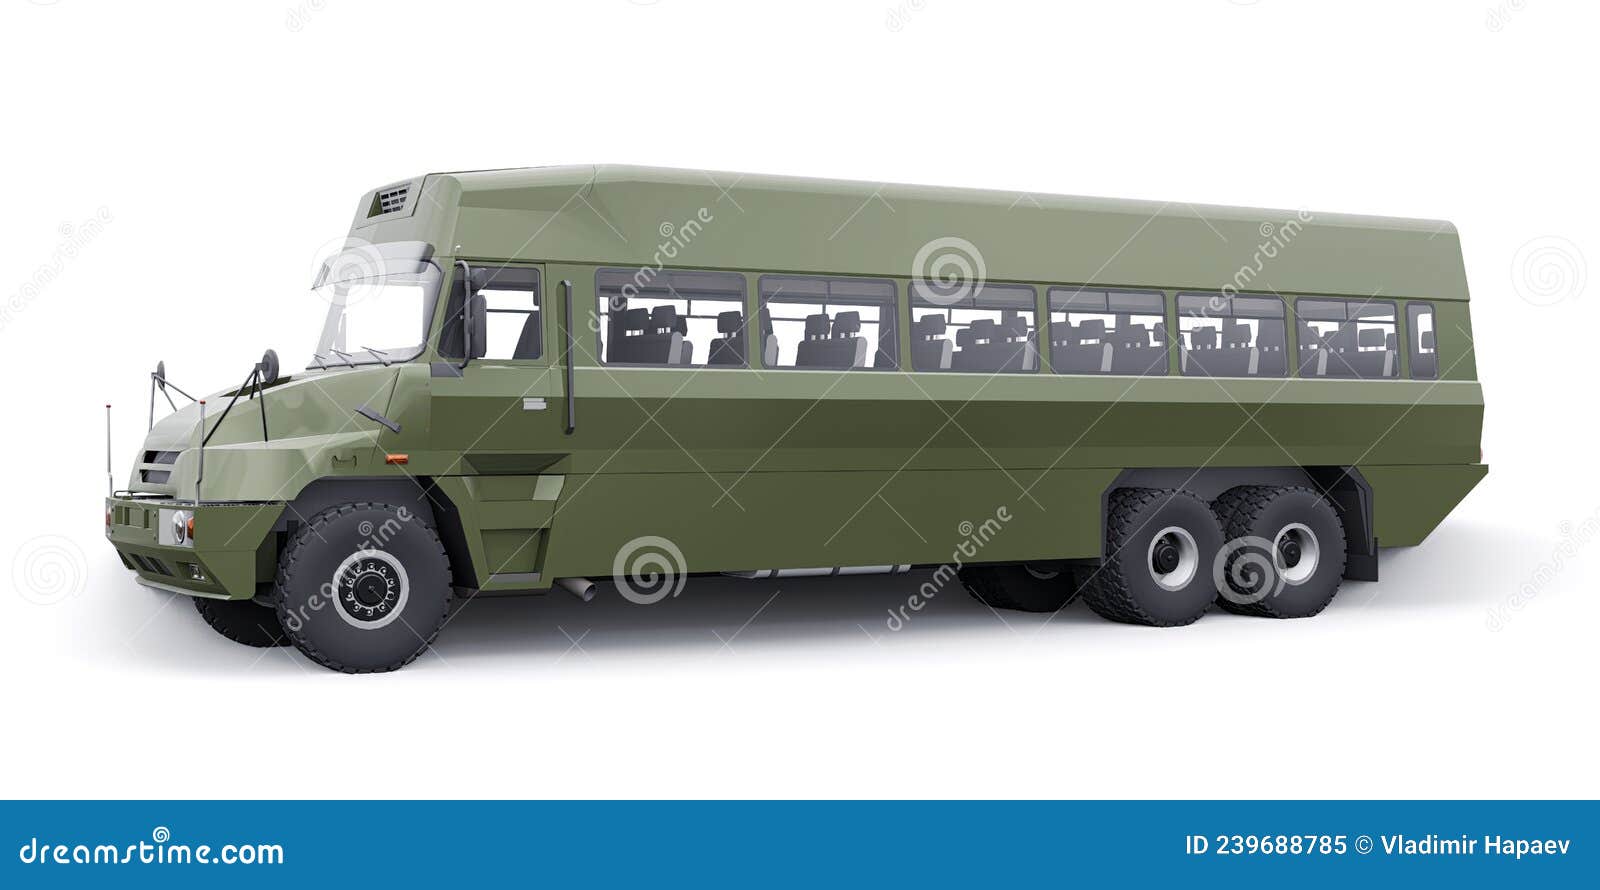 Jogo de Ônibus do Exército: Motorista de Treinador Militar - Jogos 3D de  Transporte de Ônibus::Appstore for Android